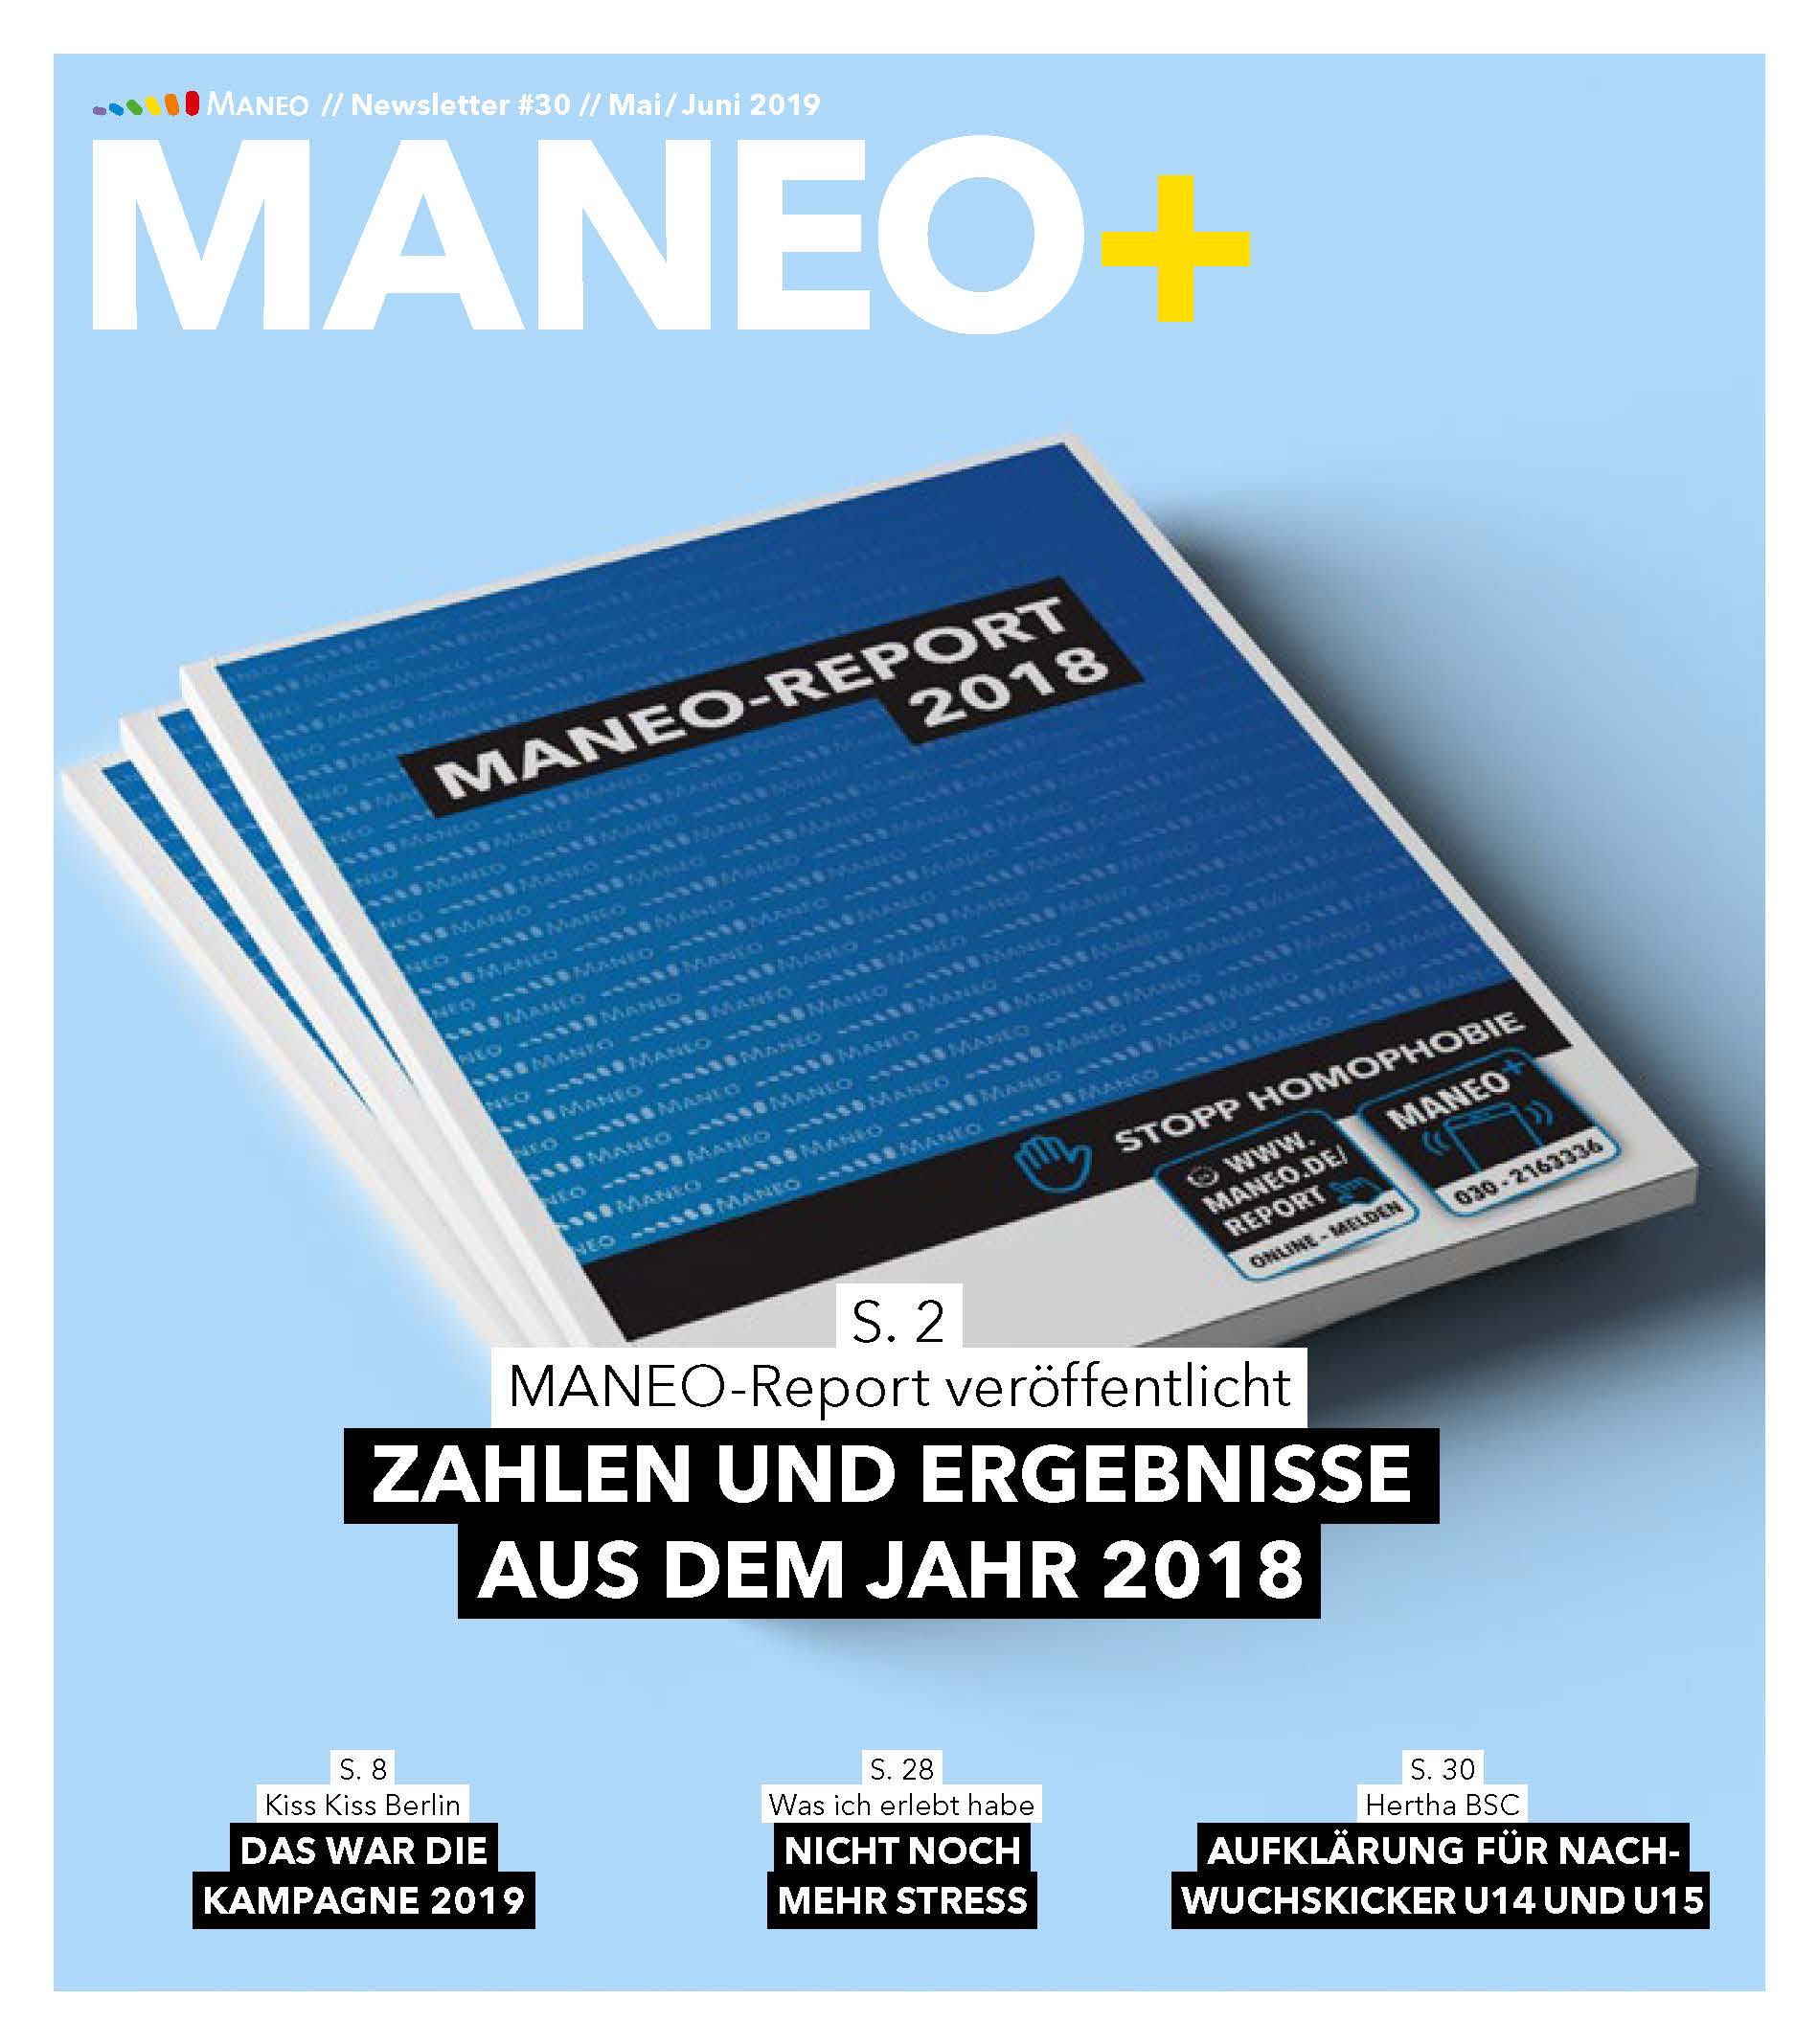 MANEO+ -Newsletter #30 ist erschienen